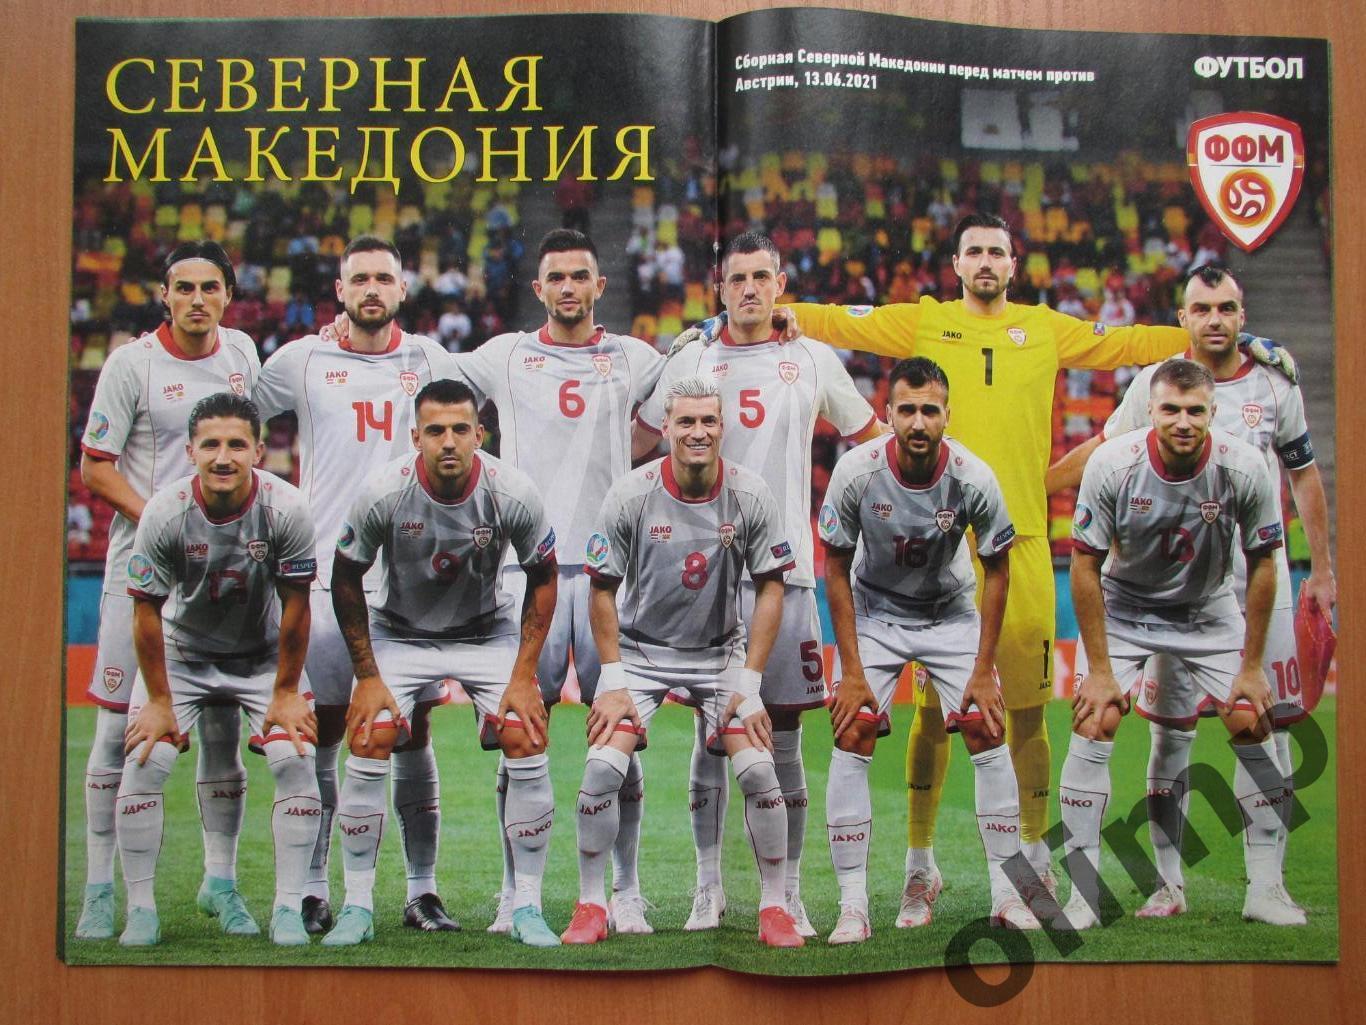 Журнал Футбол №46 17-21 июня 2021 , Австрия,Северная Македония 1